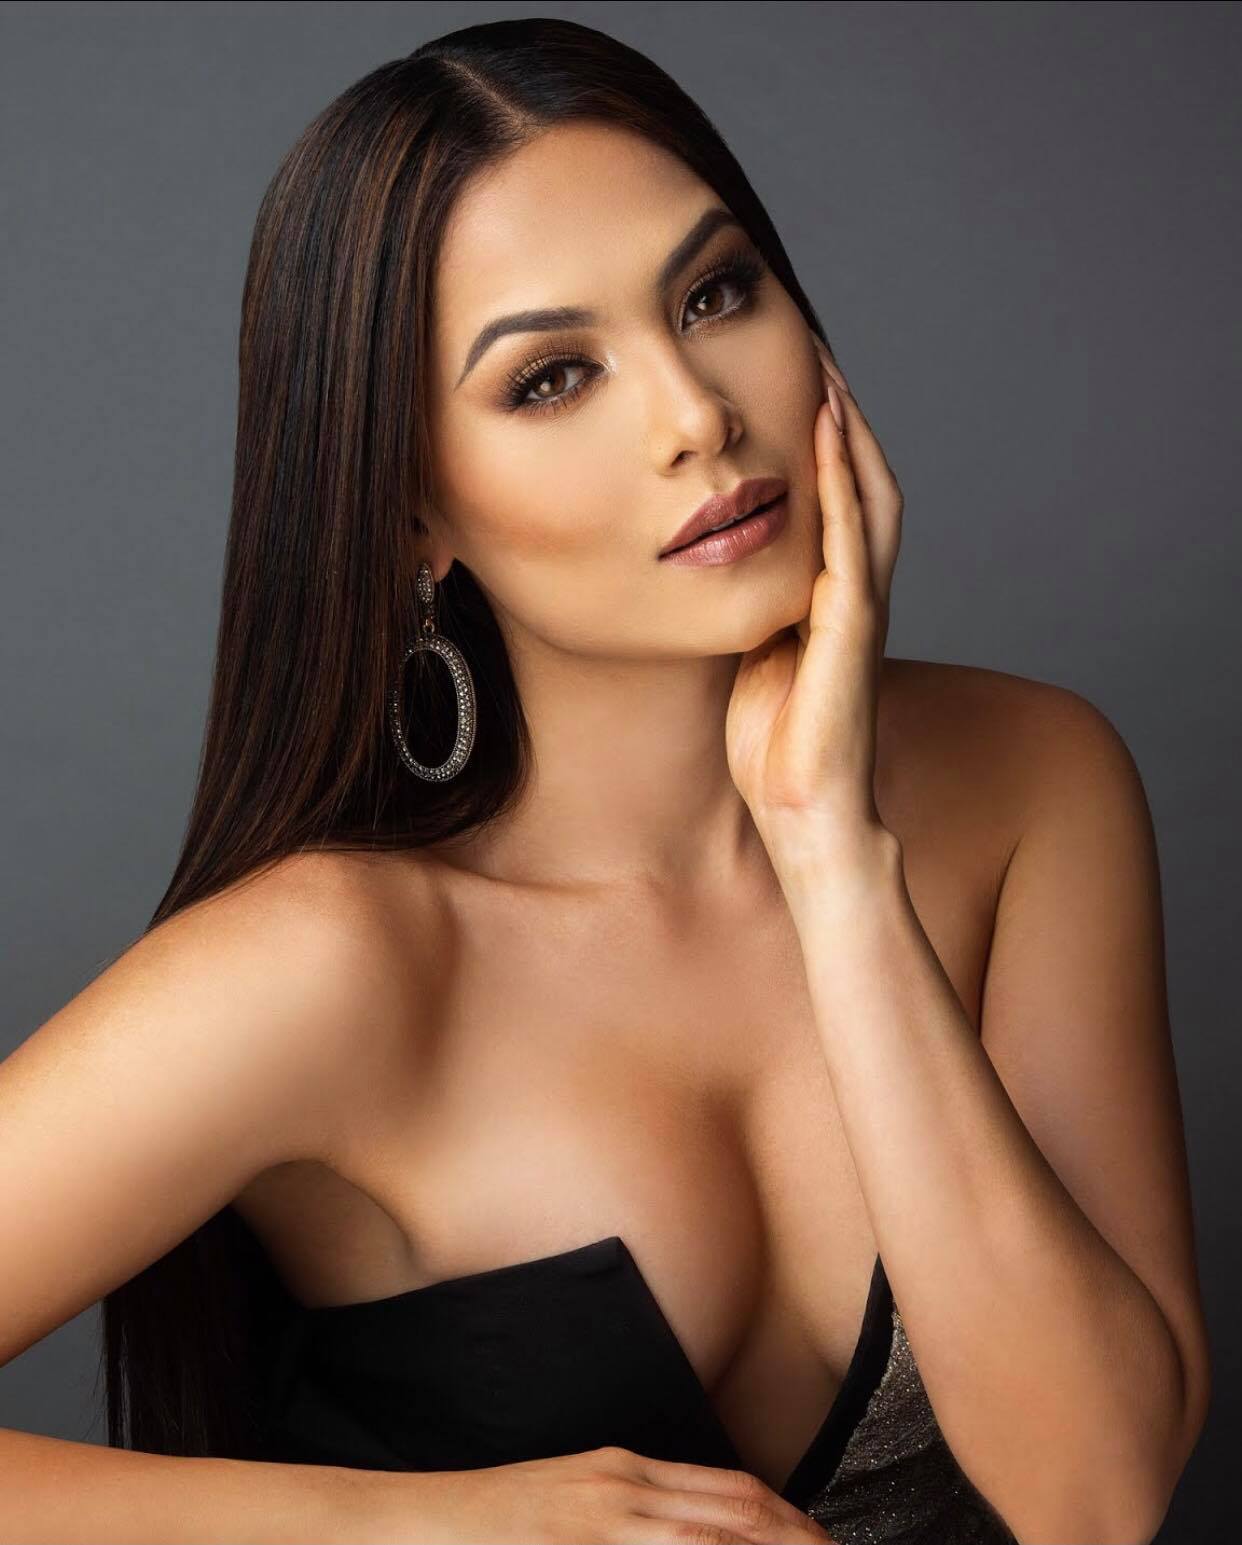 Kết quả chung kết Hoa hậu Hoàn vũ 2020: Mỹ nhân Mexico đăng quang, đại diện Việt Nam ngậm ngùi dừng chân tại Top 21. - ảnh 1